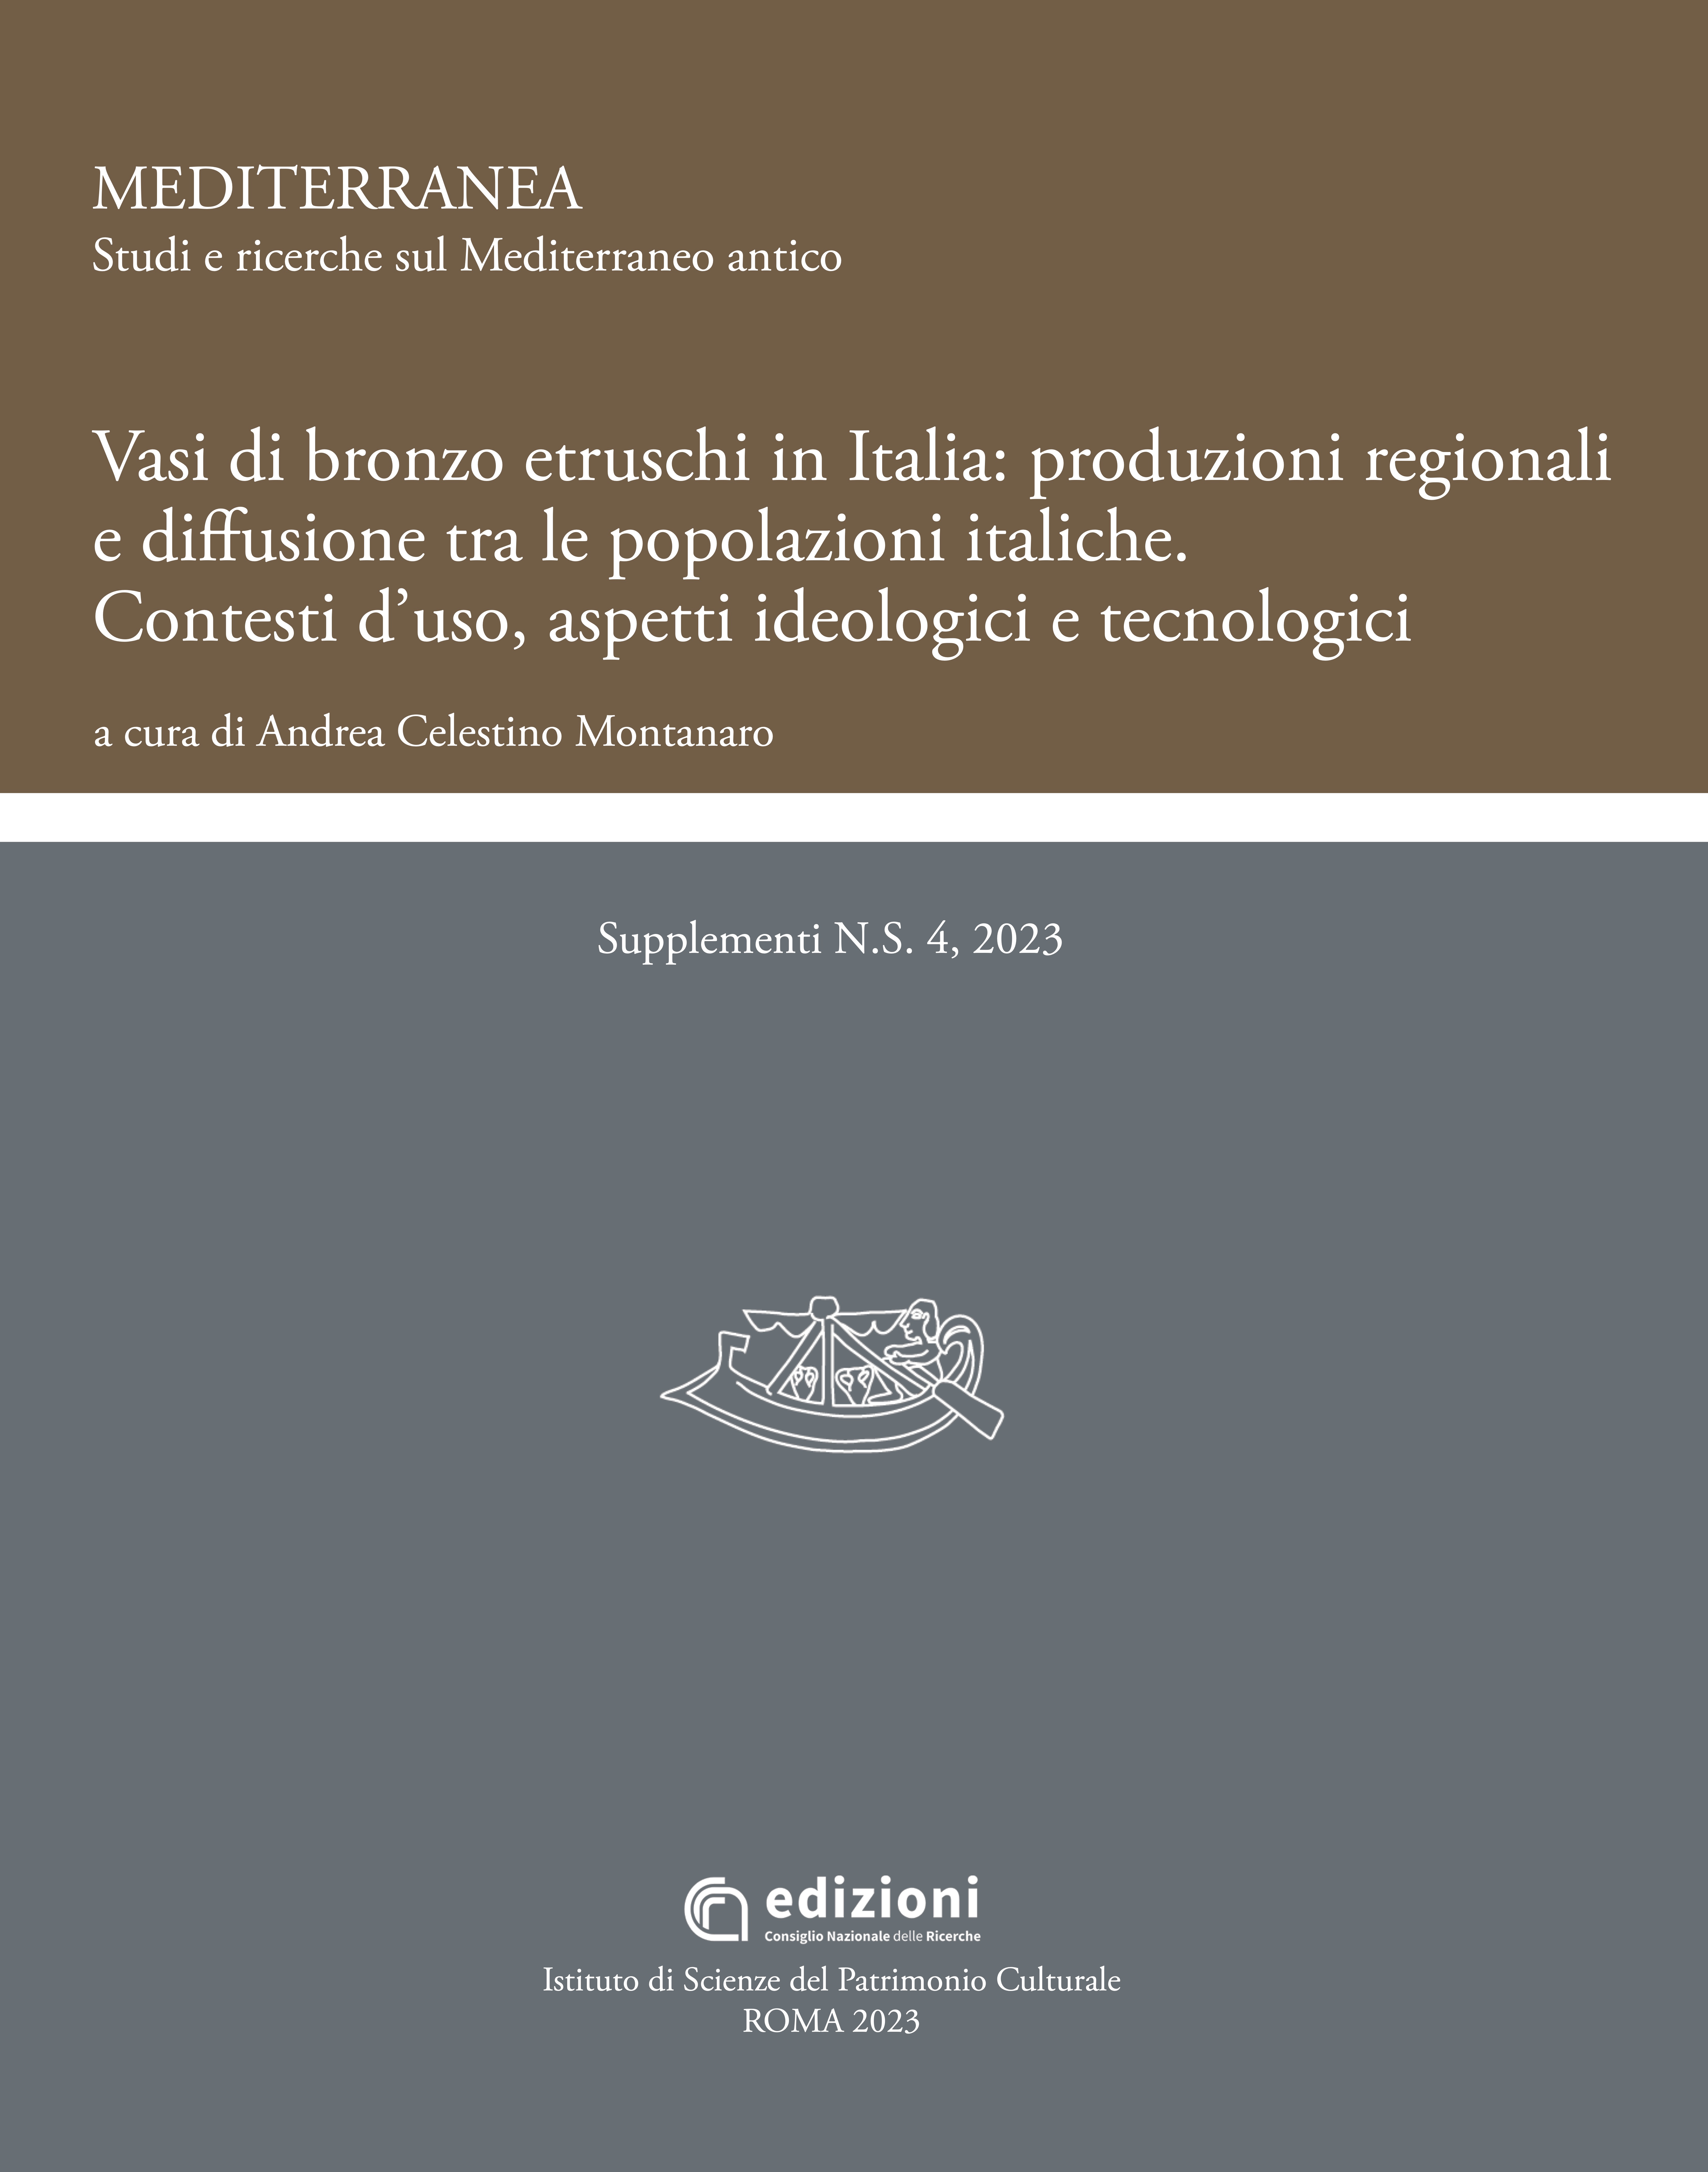 Cover volume Vasi di bronzo etruschi in Italia: produzioni regionali e diffusione tra le popolazioni italiche 